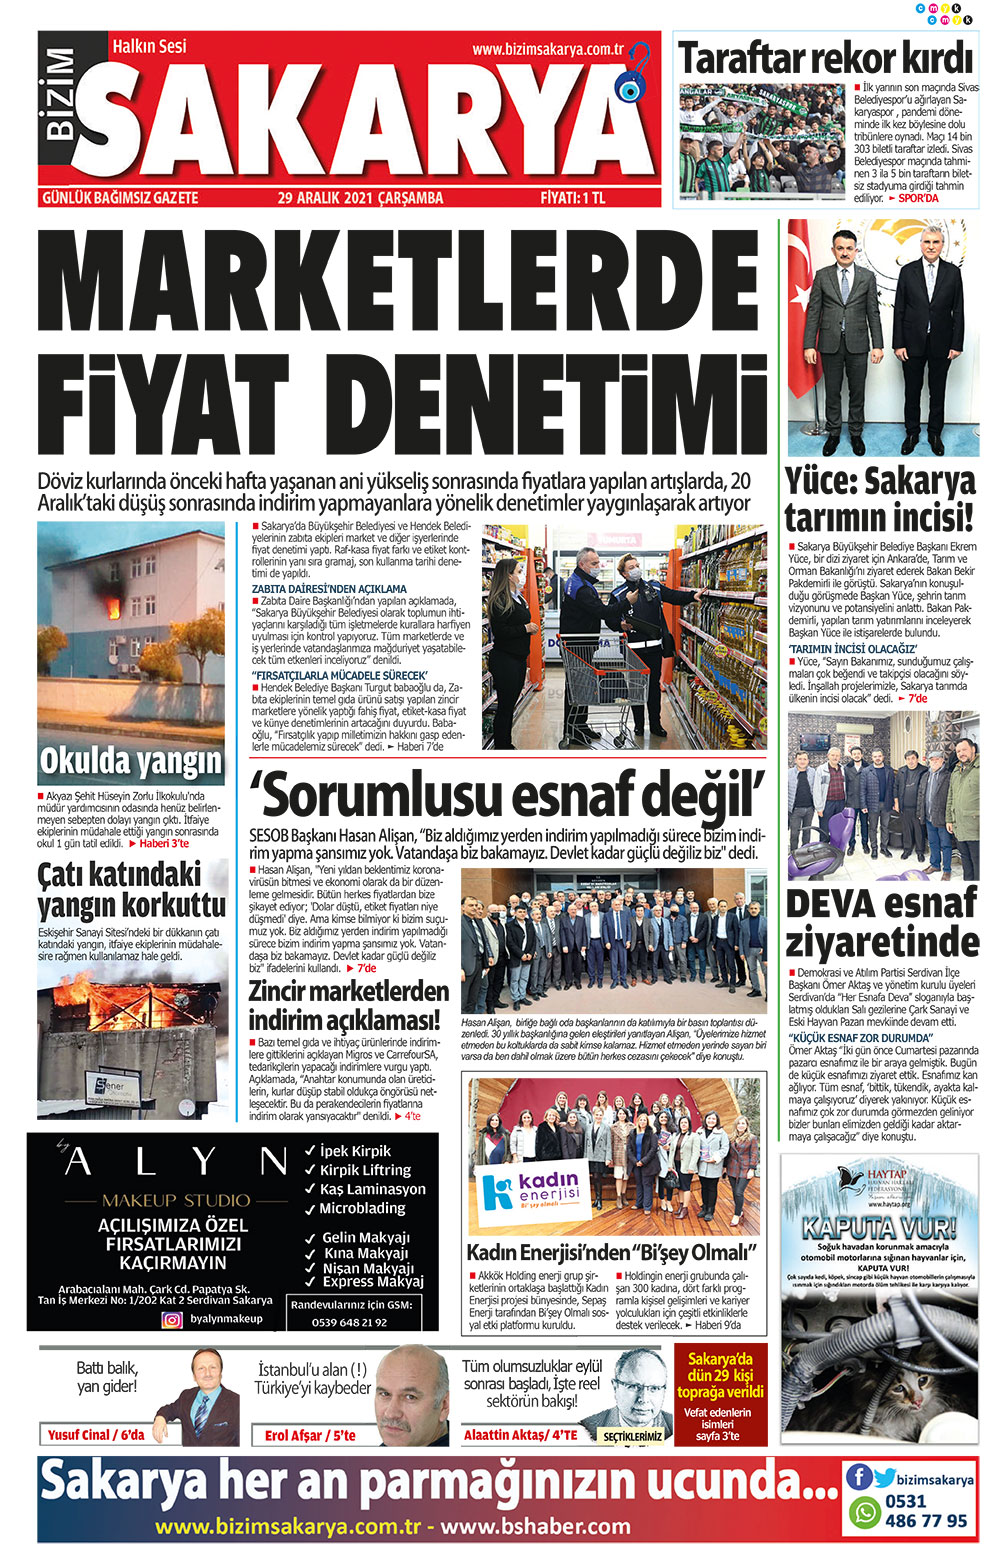 Bizim Sakarya Gazetesi - 29.12.2021 Manşeti